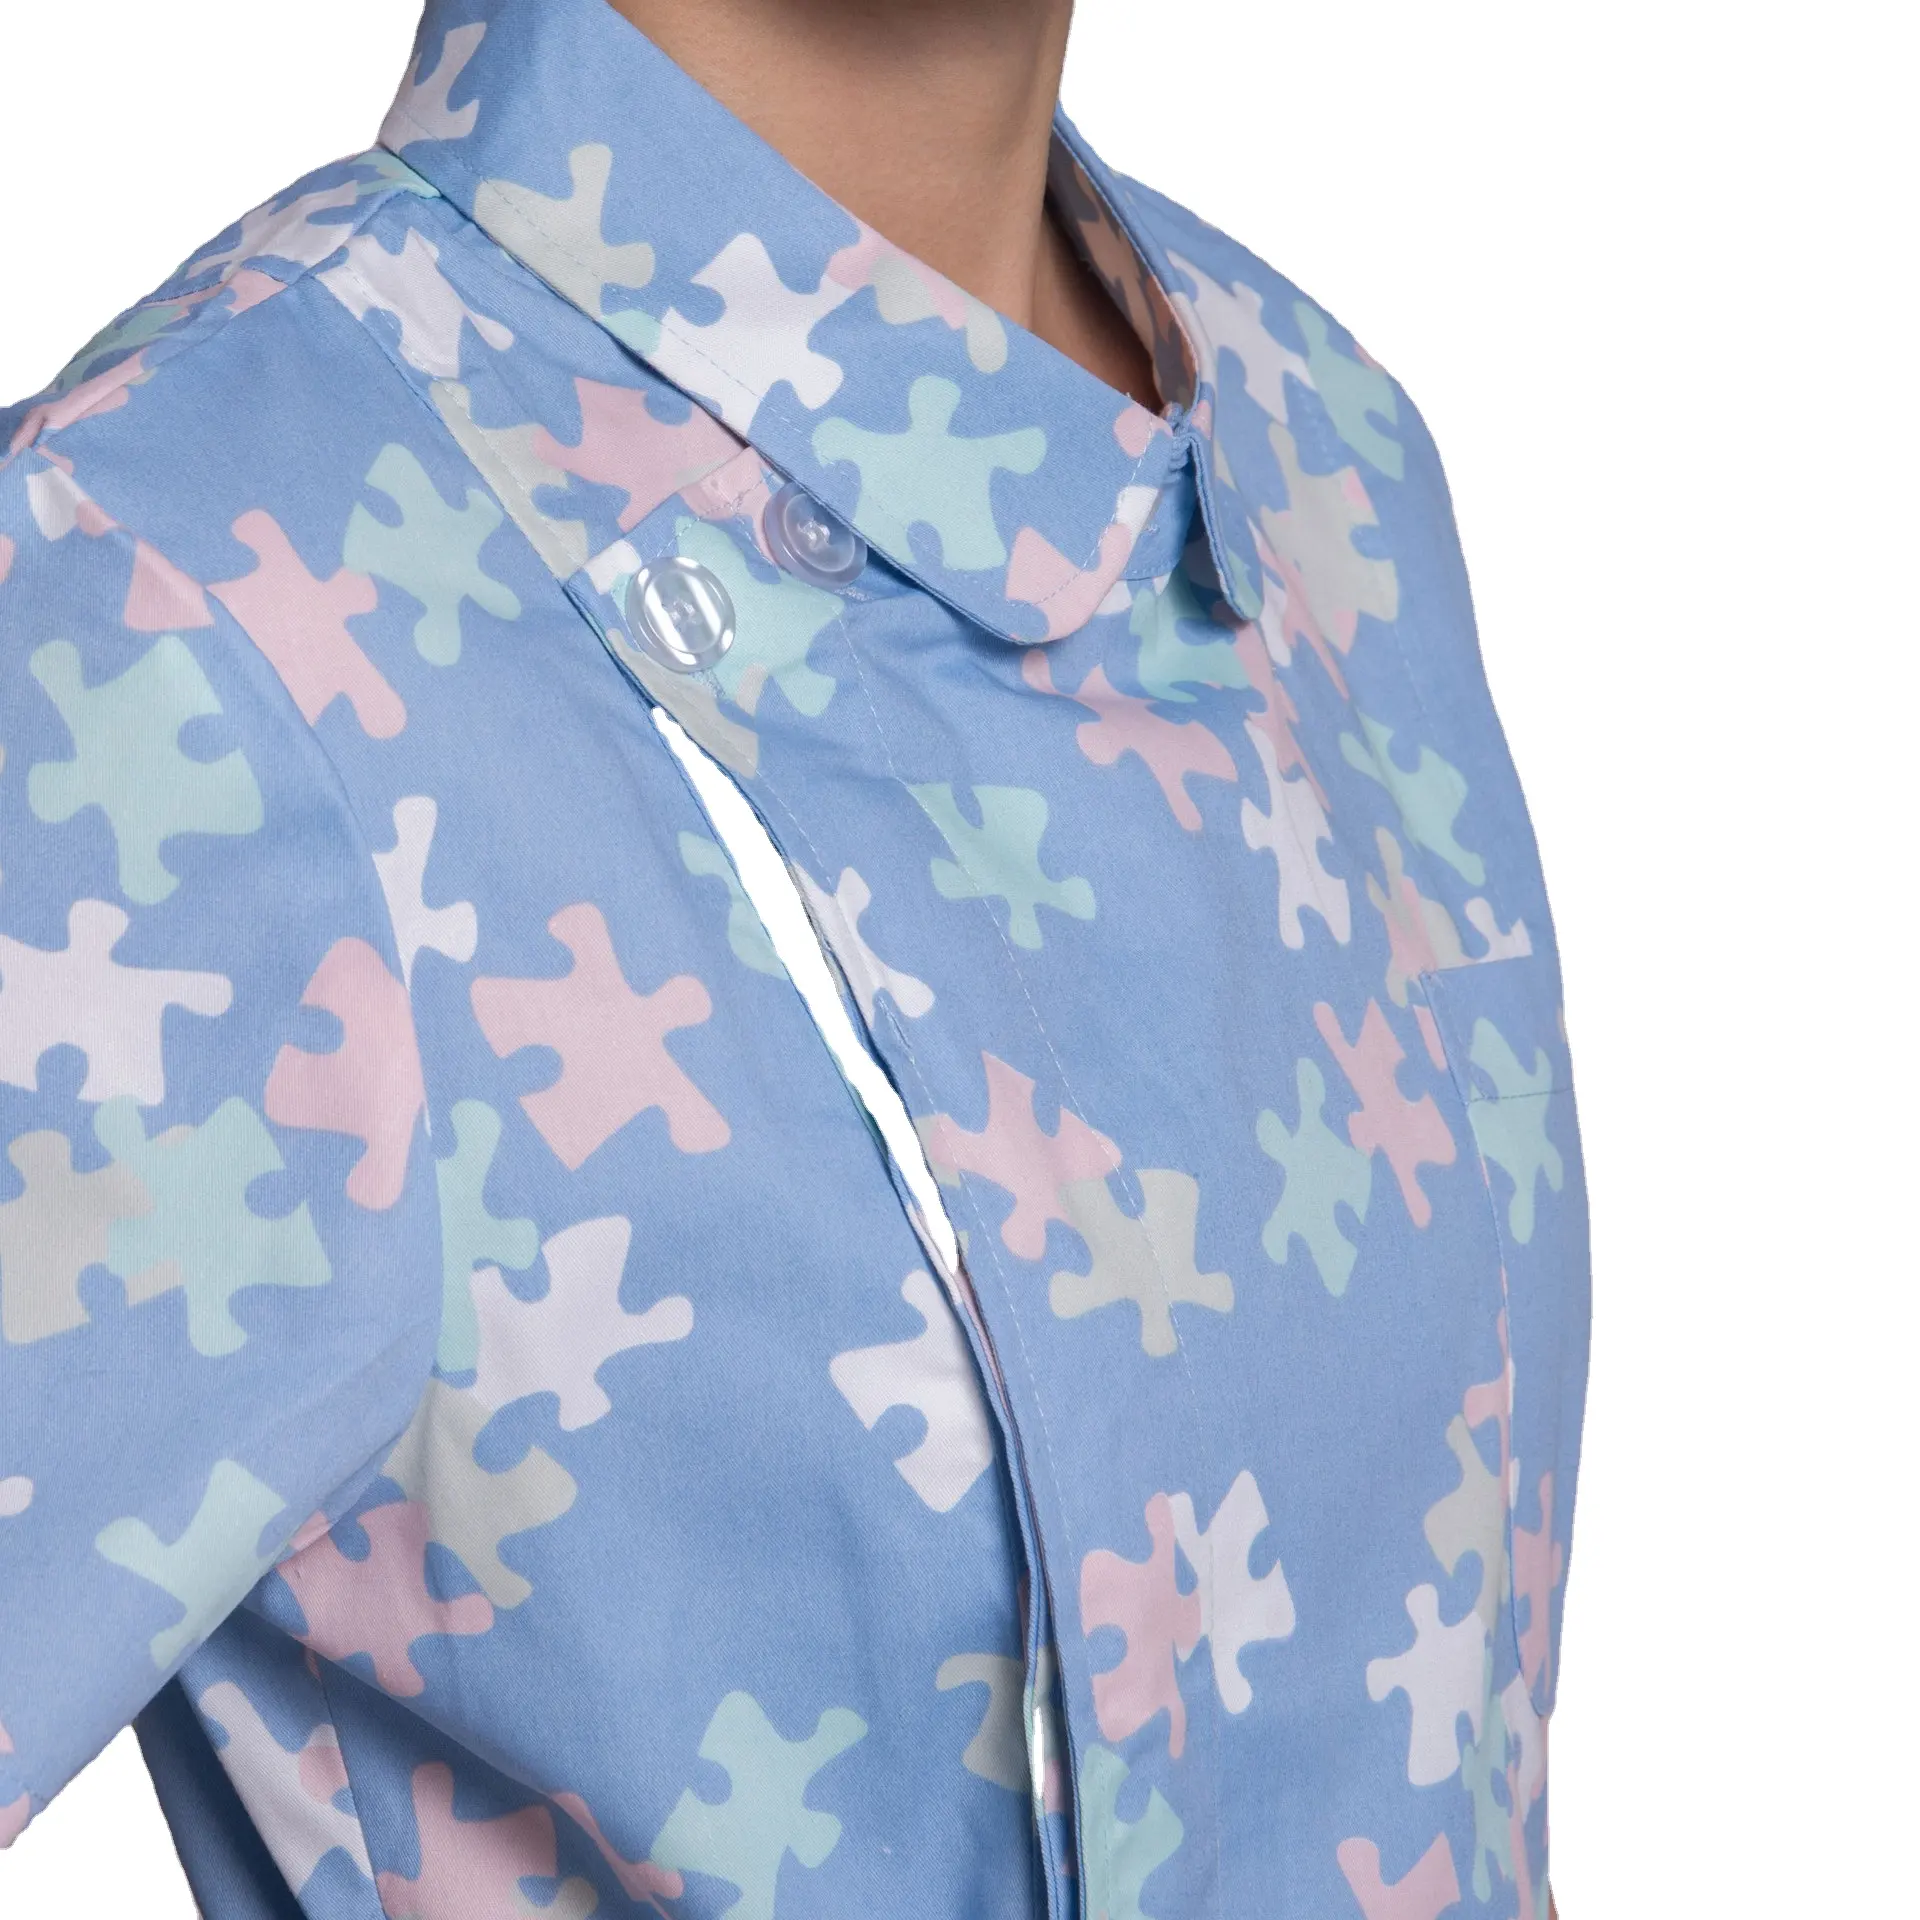 Oem personalizado logotipo design floral enfermeira uniforme vestido conjunto farmácia hospital salão de beleza macacão floral split set